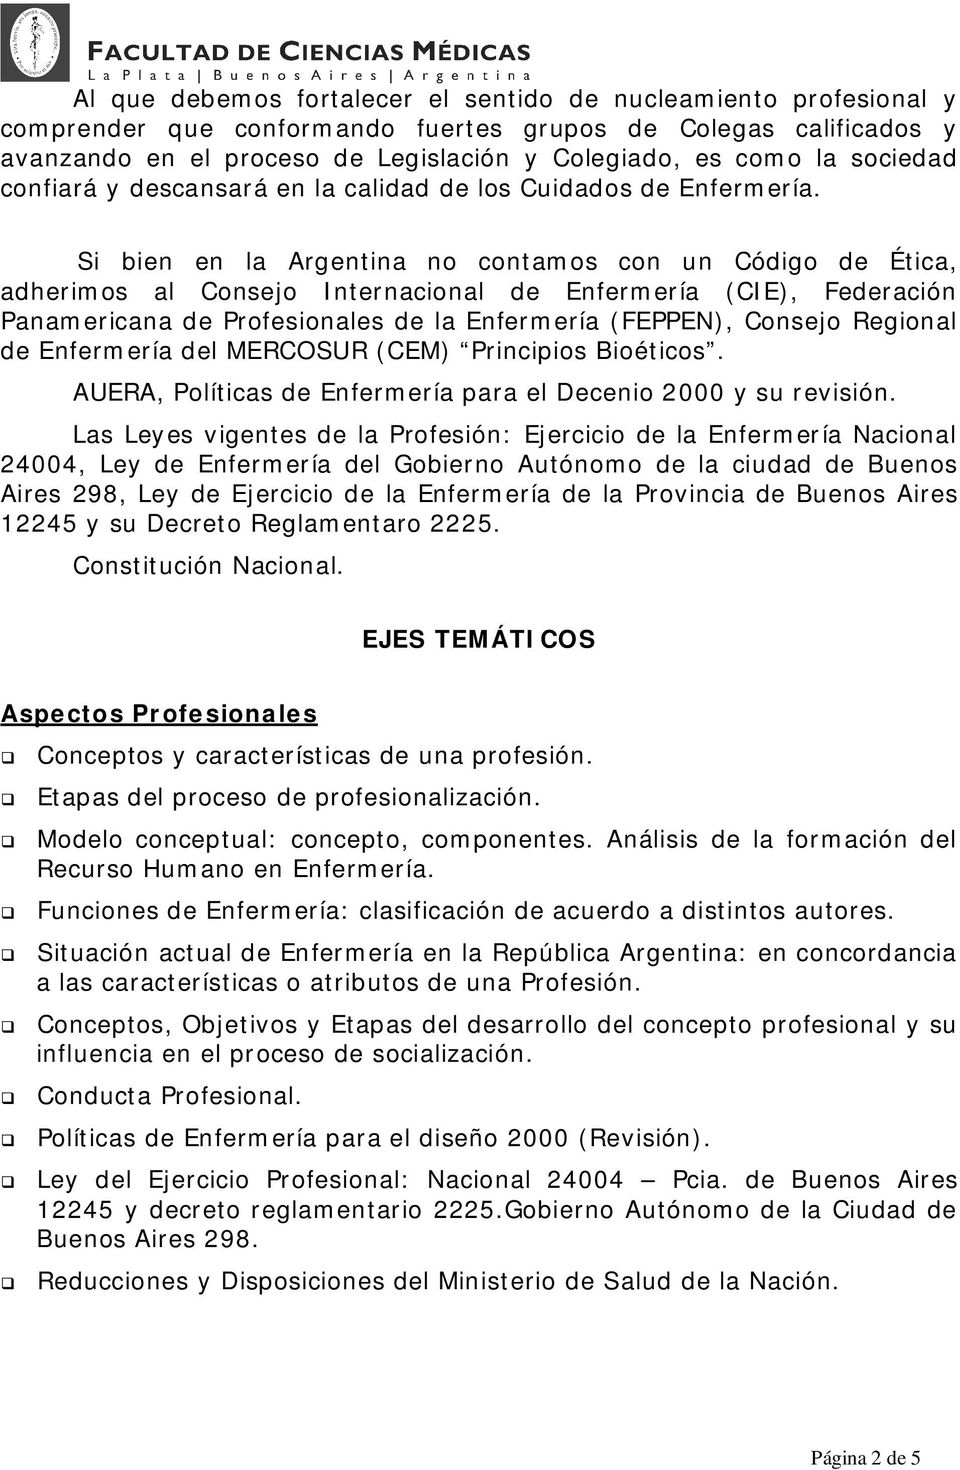 Si bien en la Argentina no contamos con un Código de Ética, adherimos al Consejo Internacional de Enfermería (CIE), Federación Panamericana de Profesionales de la Enfermería (FEPPEN), Consejo